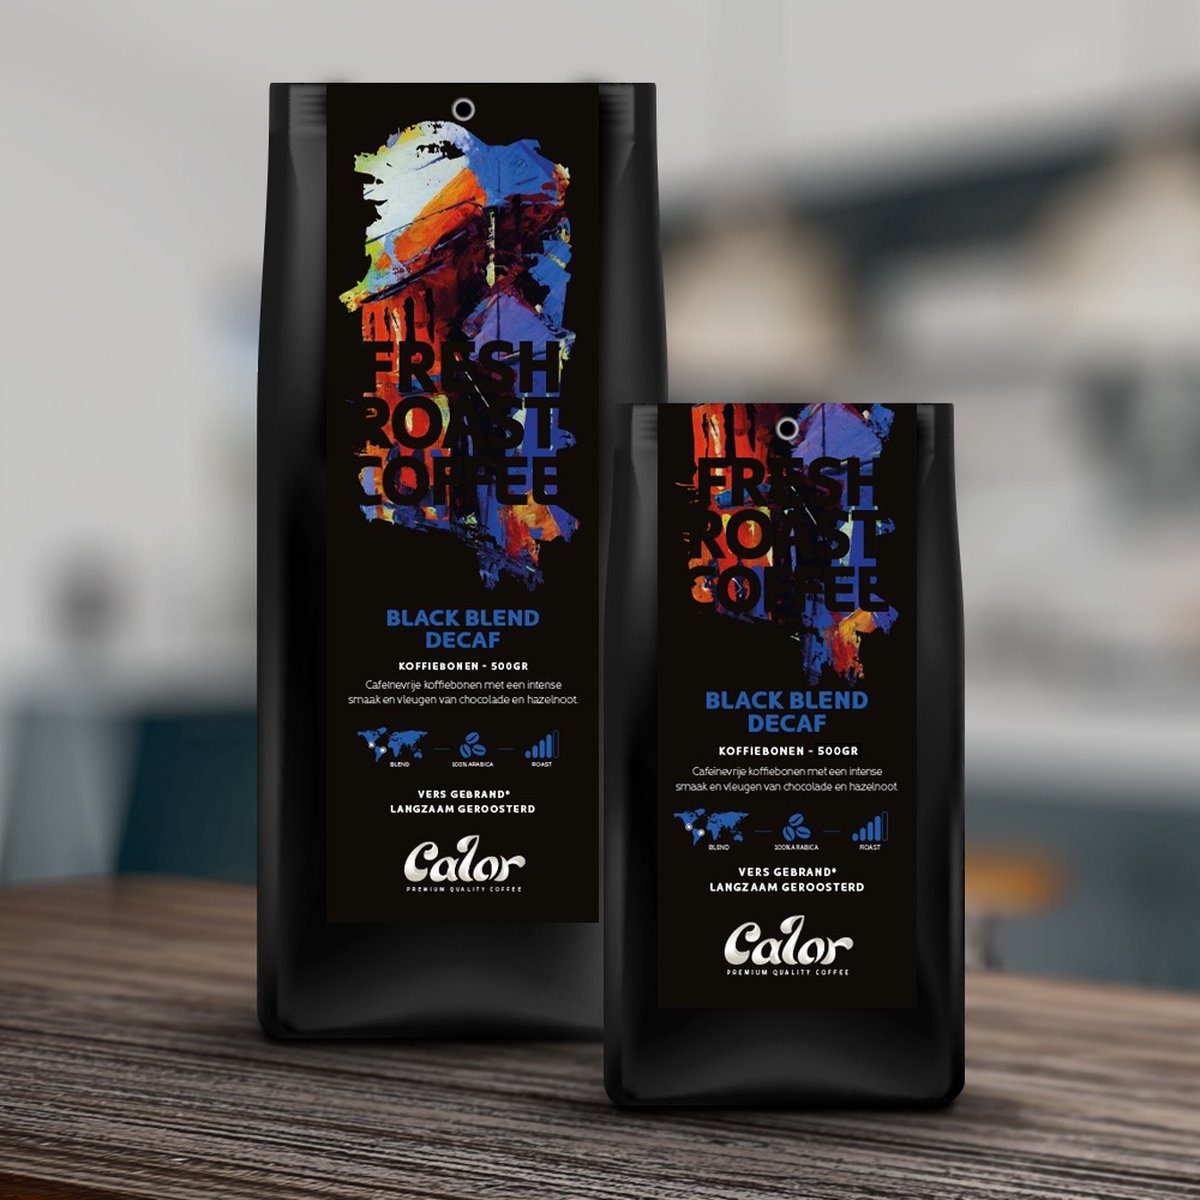 CALOR Black blend decaf koffiebonen - 500 gr - 100% arabica - Blend